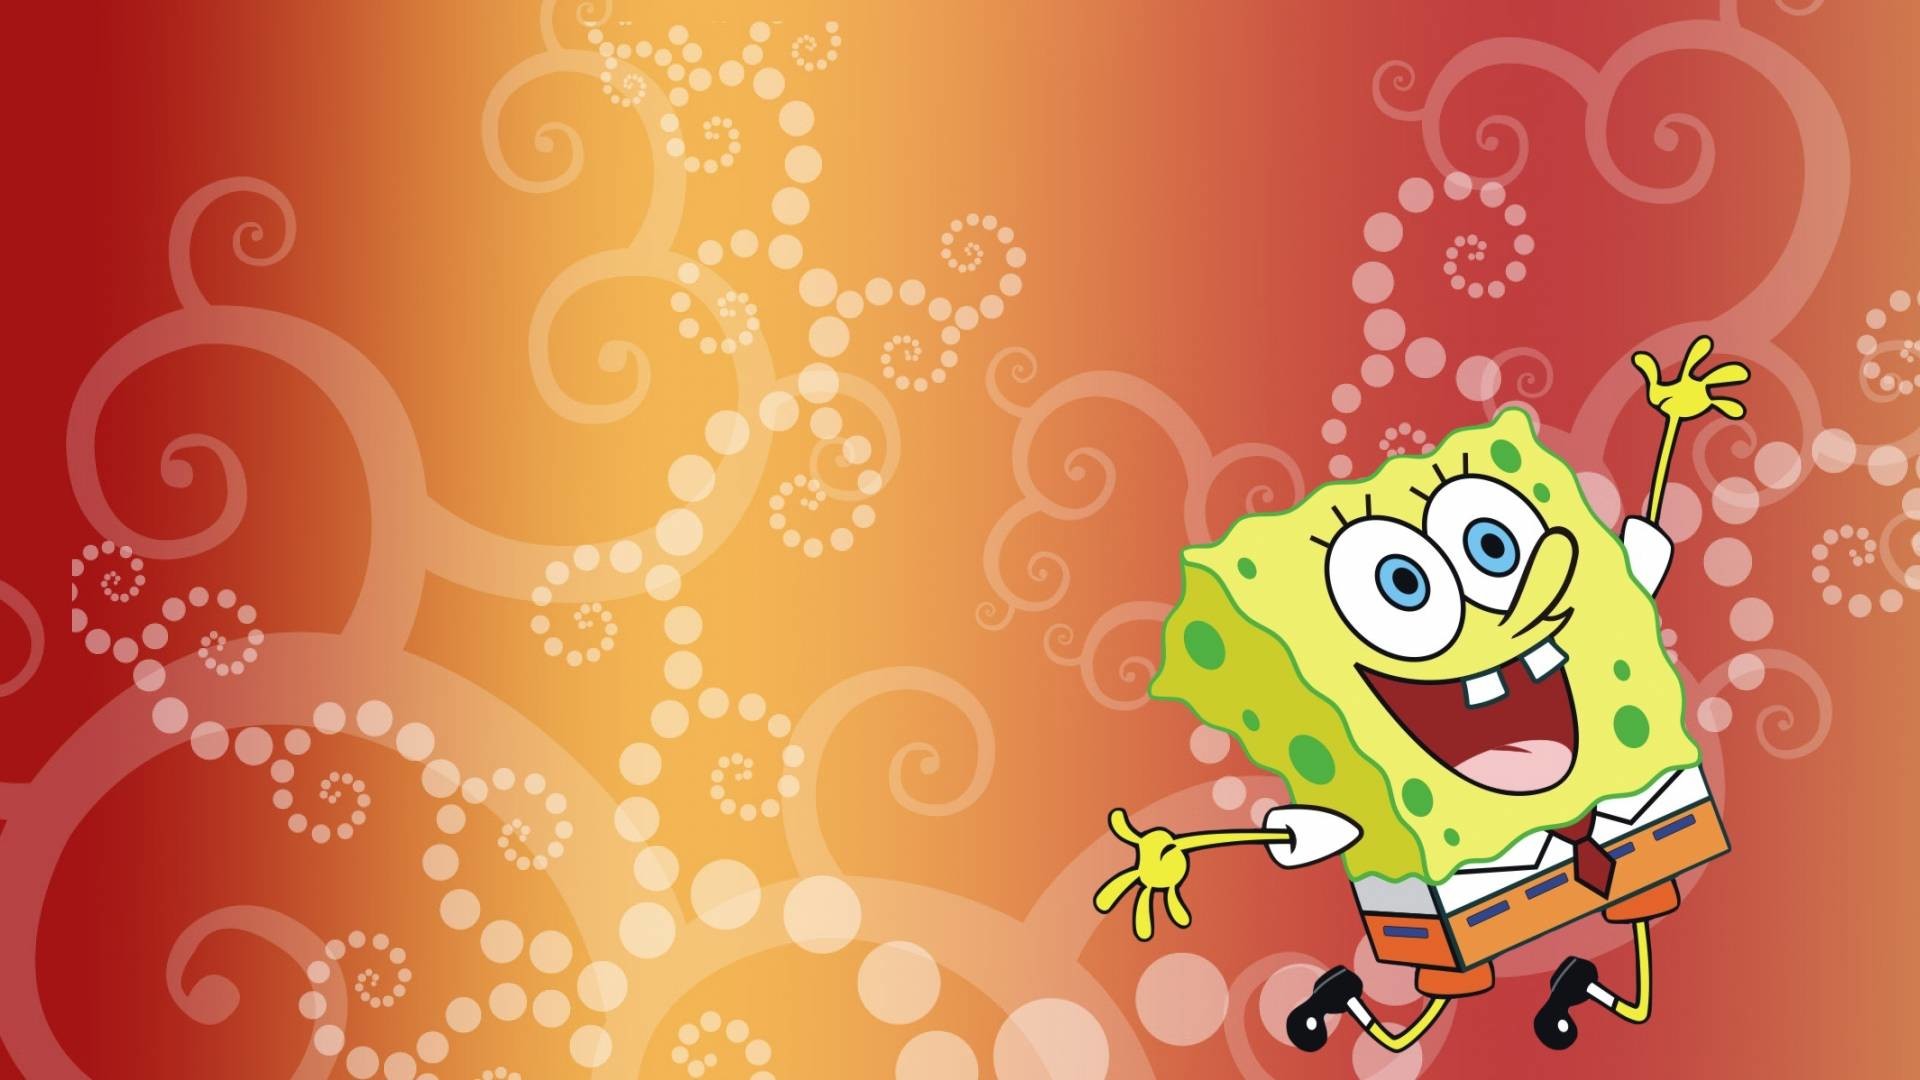 1920x1080 Cool Spongebob wallpaper - SpongeBoB Square Pants Wallpaper